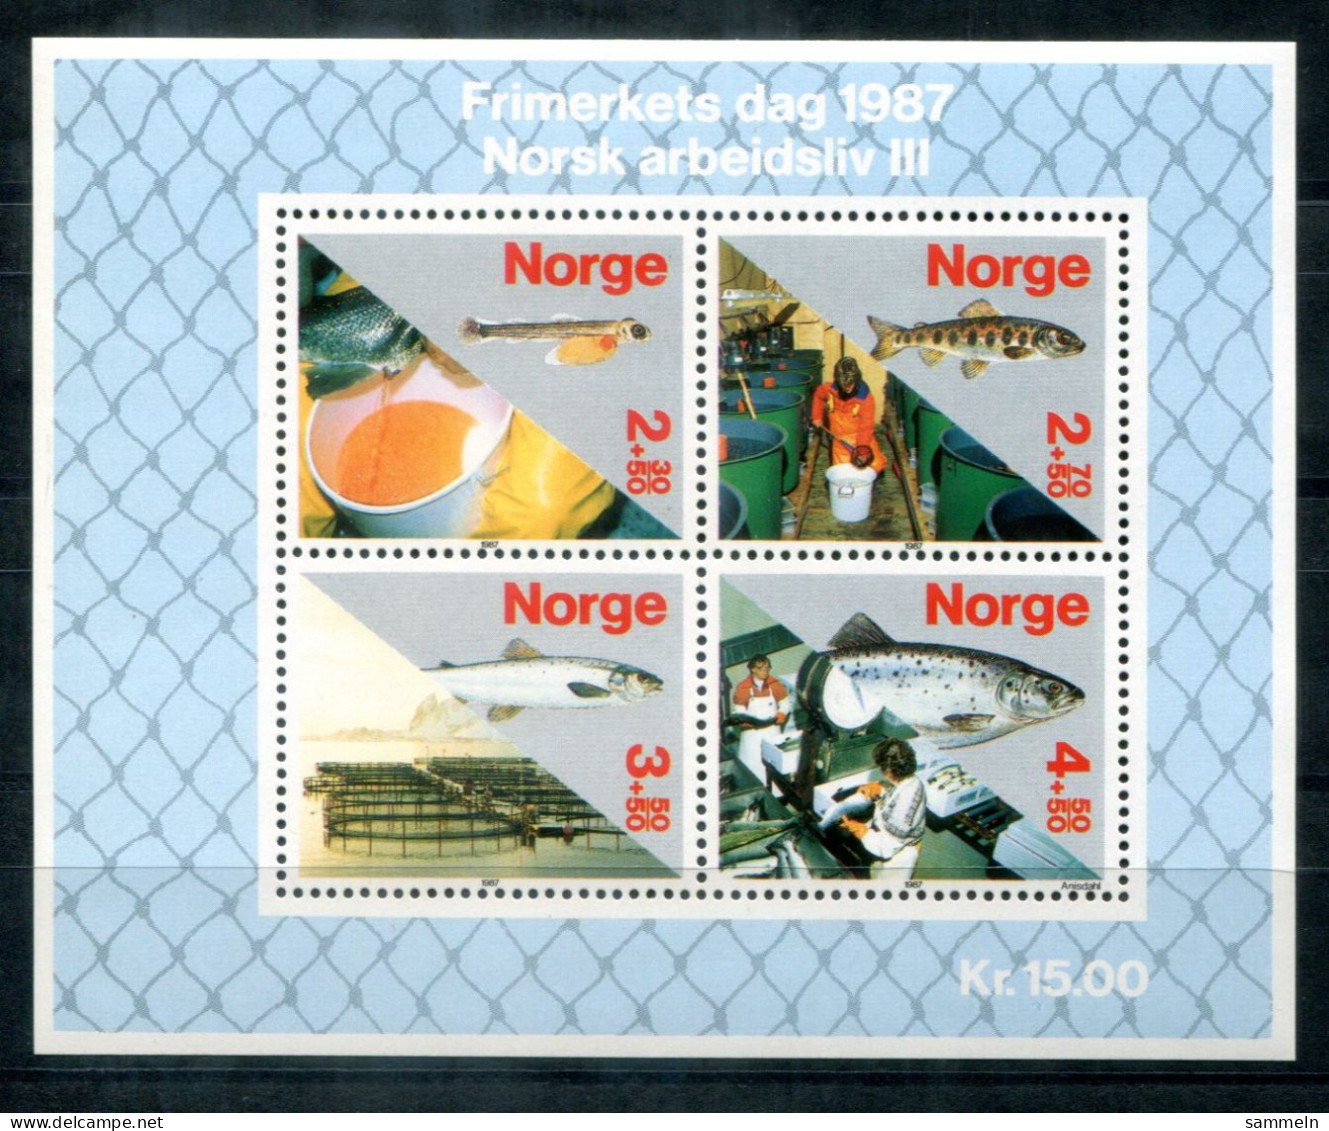 NORWEGEN Block 8, Bl.8 Mnh - Sisch, Fish, Poisson - NORWAY / NORVÈGE - Hojas Bloque